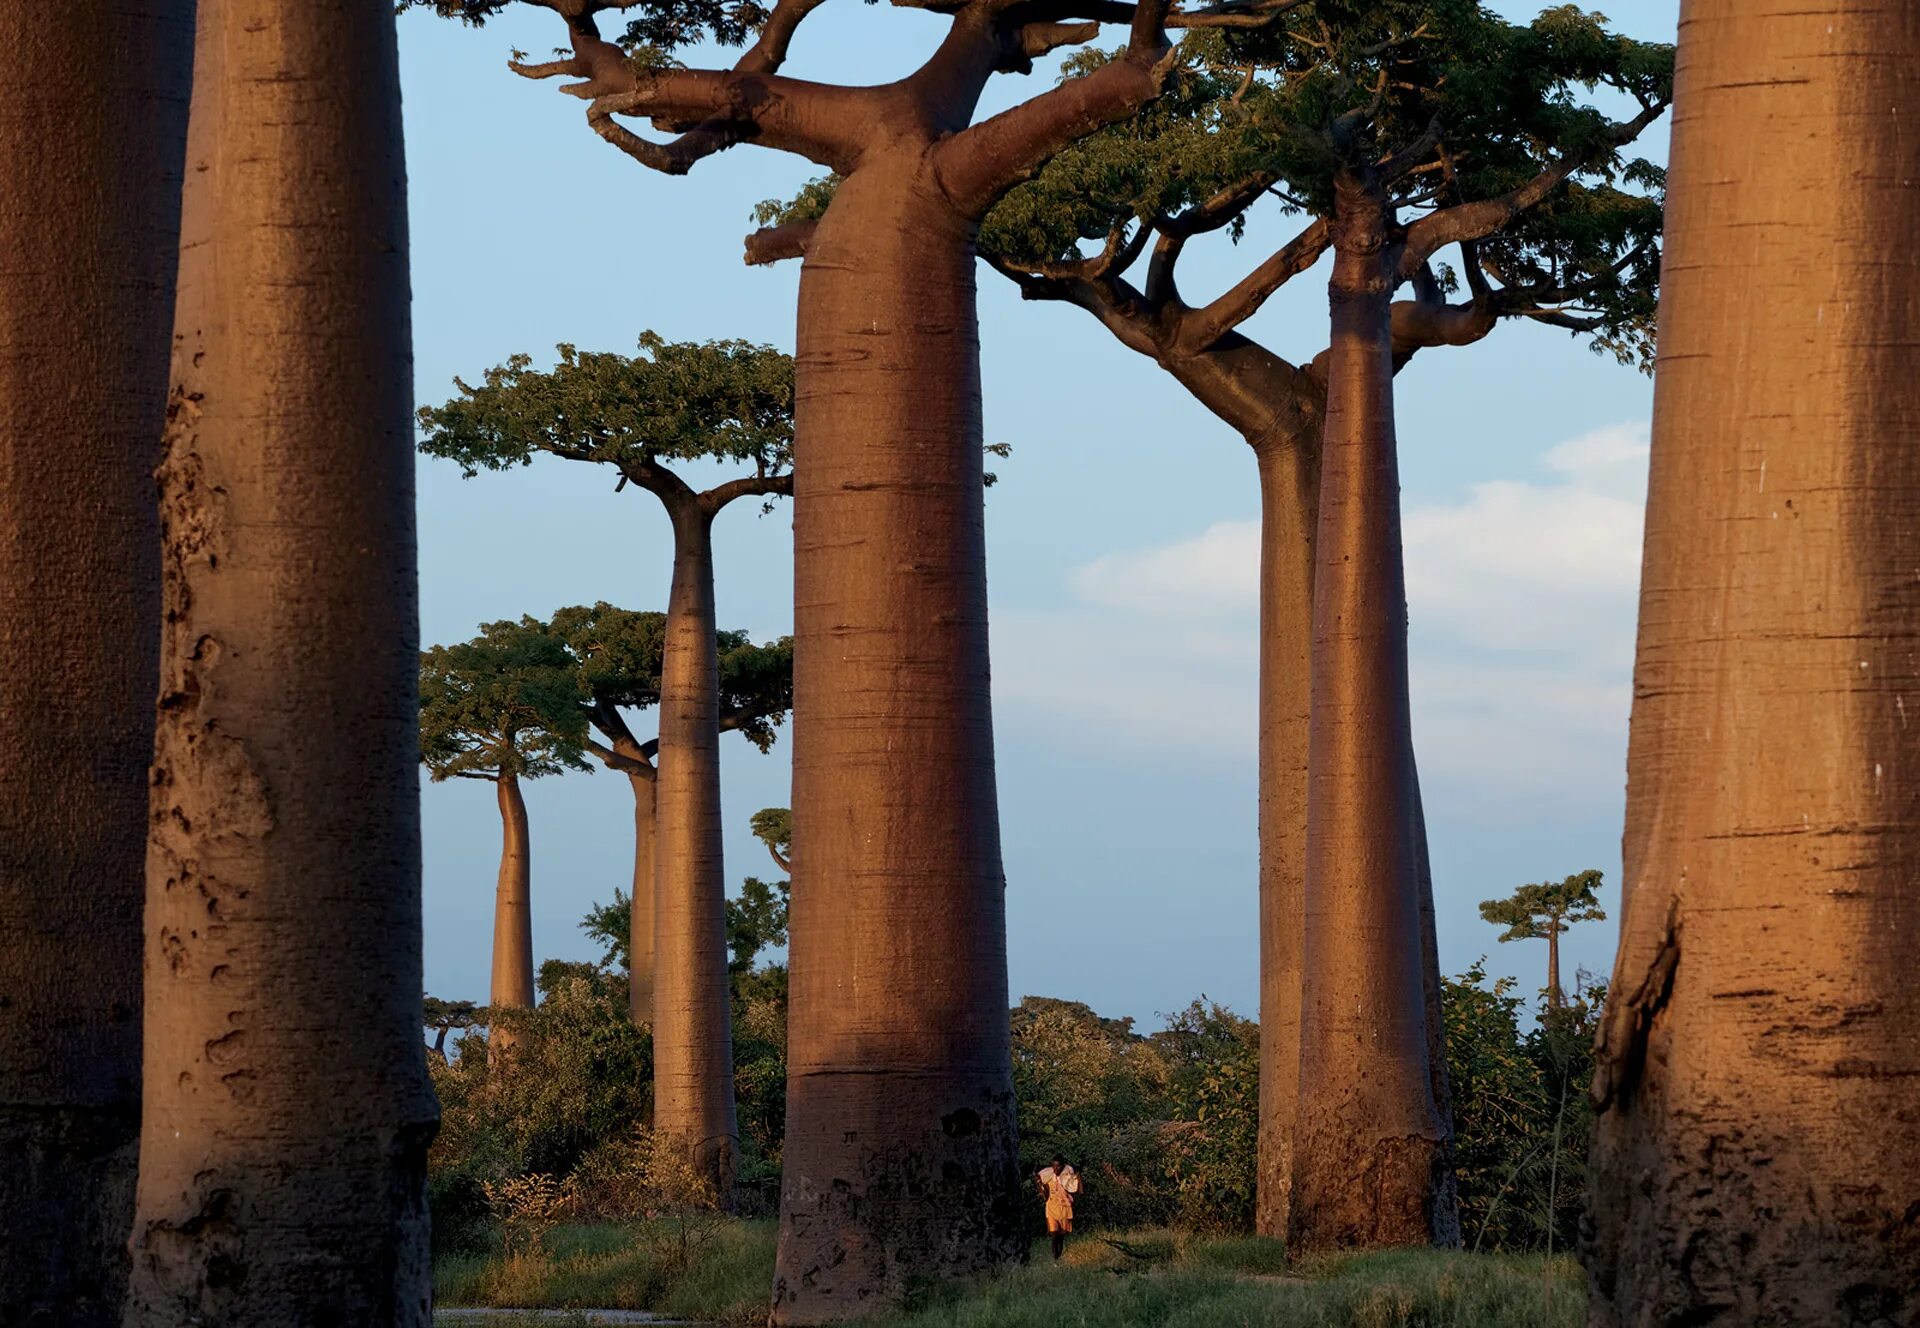 Ба баб. Мадагаскар дерево баобаб Мадагаскар. Баобаб (Адансония пальчатая. Мадагаскарский баобаб дерево. Баобаб в Африке.